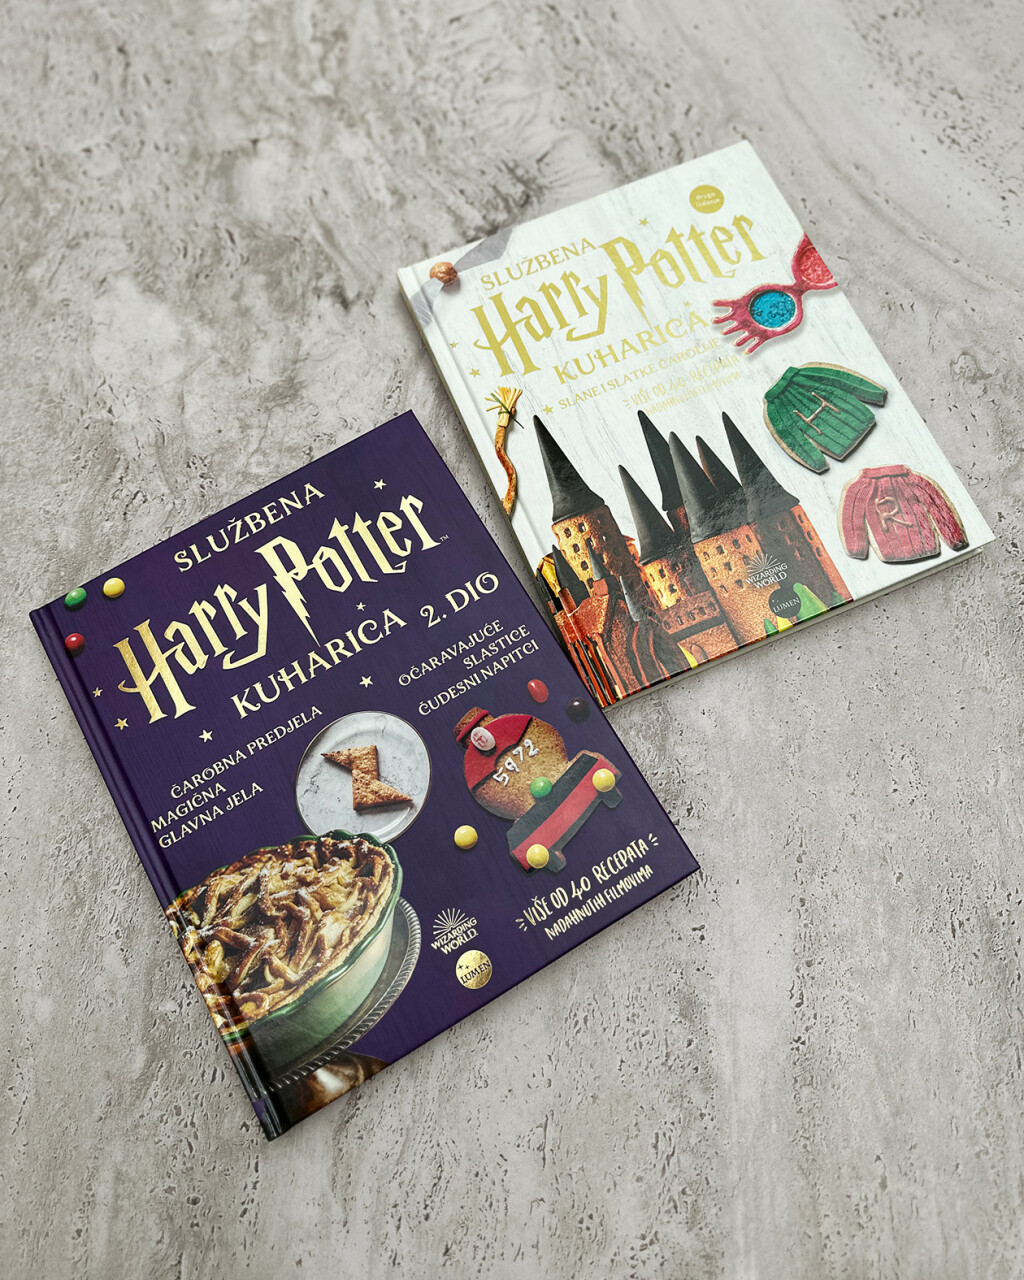 Službena Harry Potter kuharica 1. i 2. dio